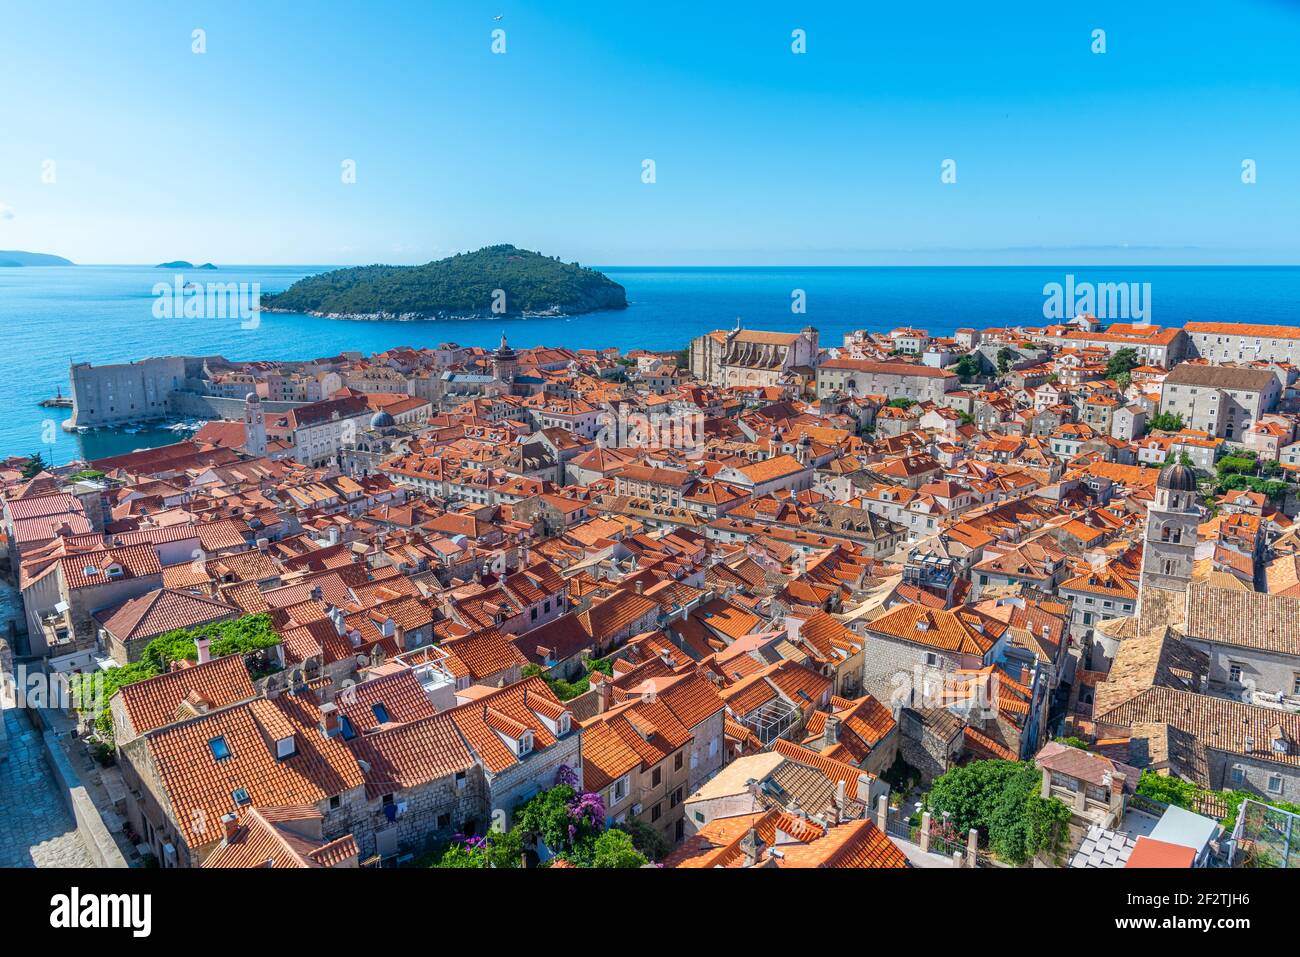 Vue aérienne des toits rouges de la vieille ville de Dubrovnik et de l'île de Lokrum, Croatie Banque D'Images